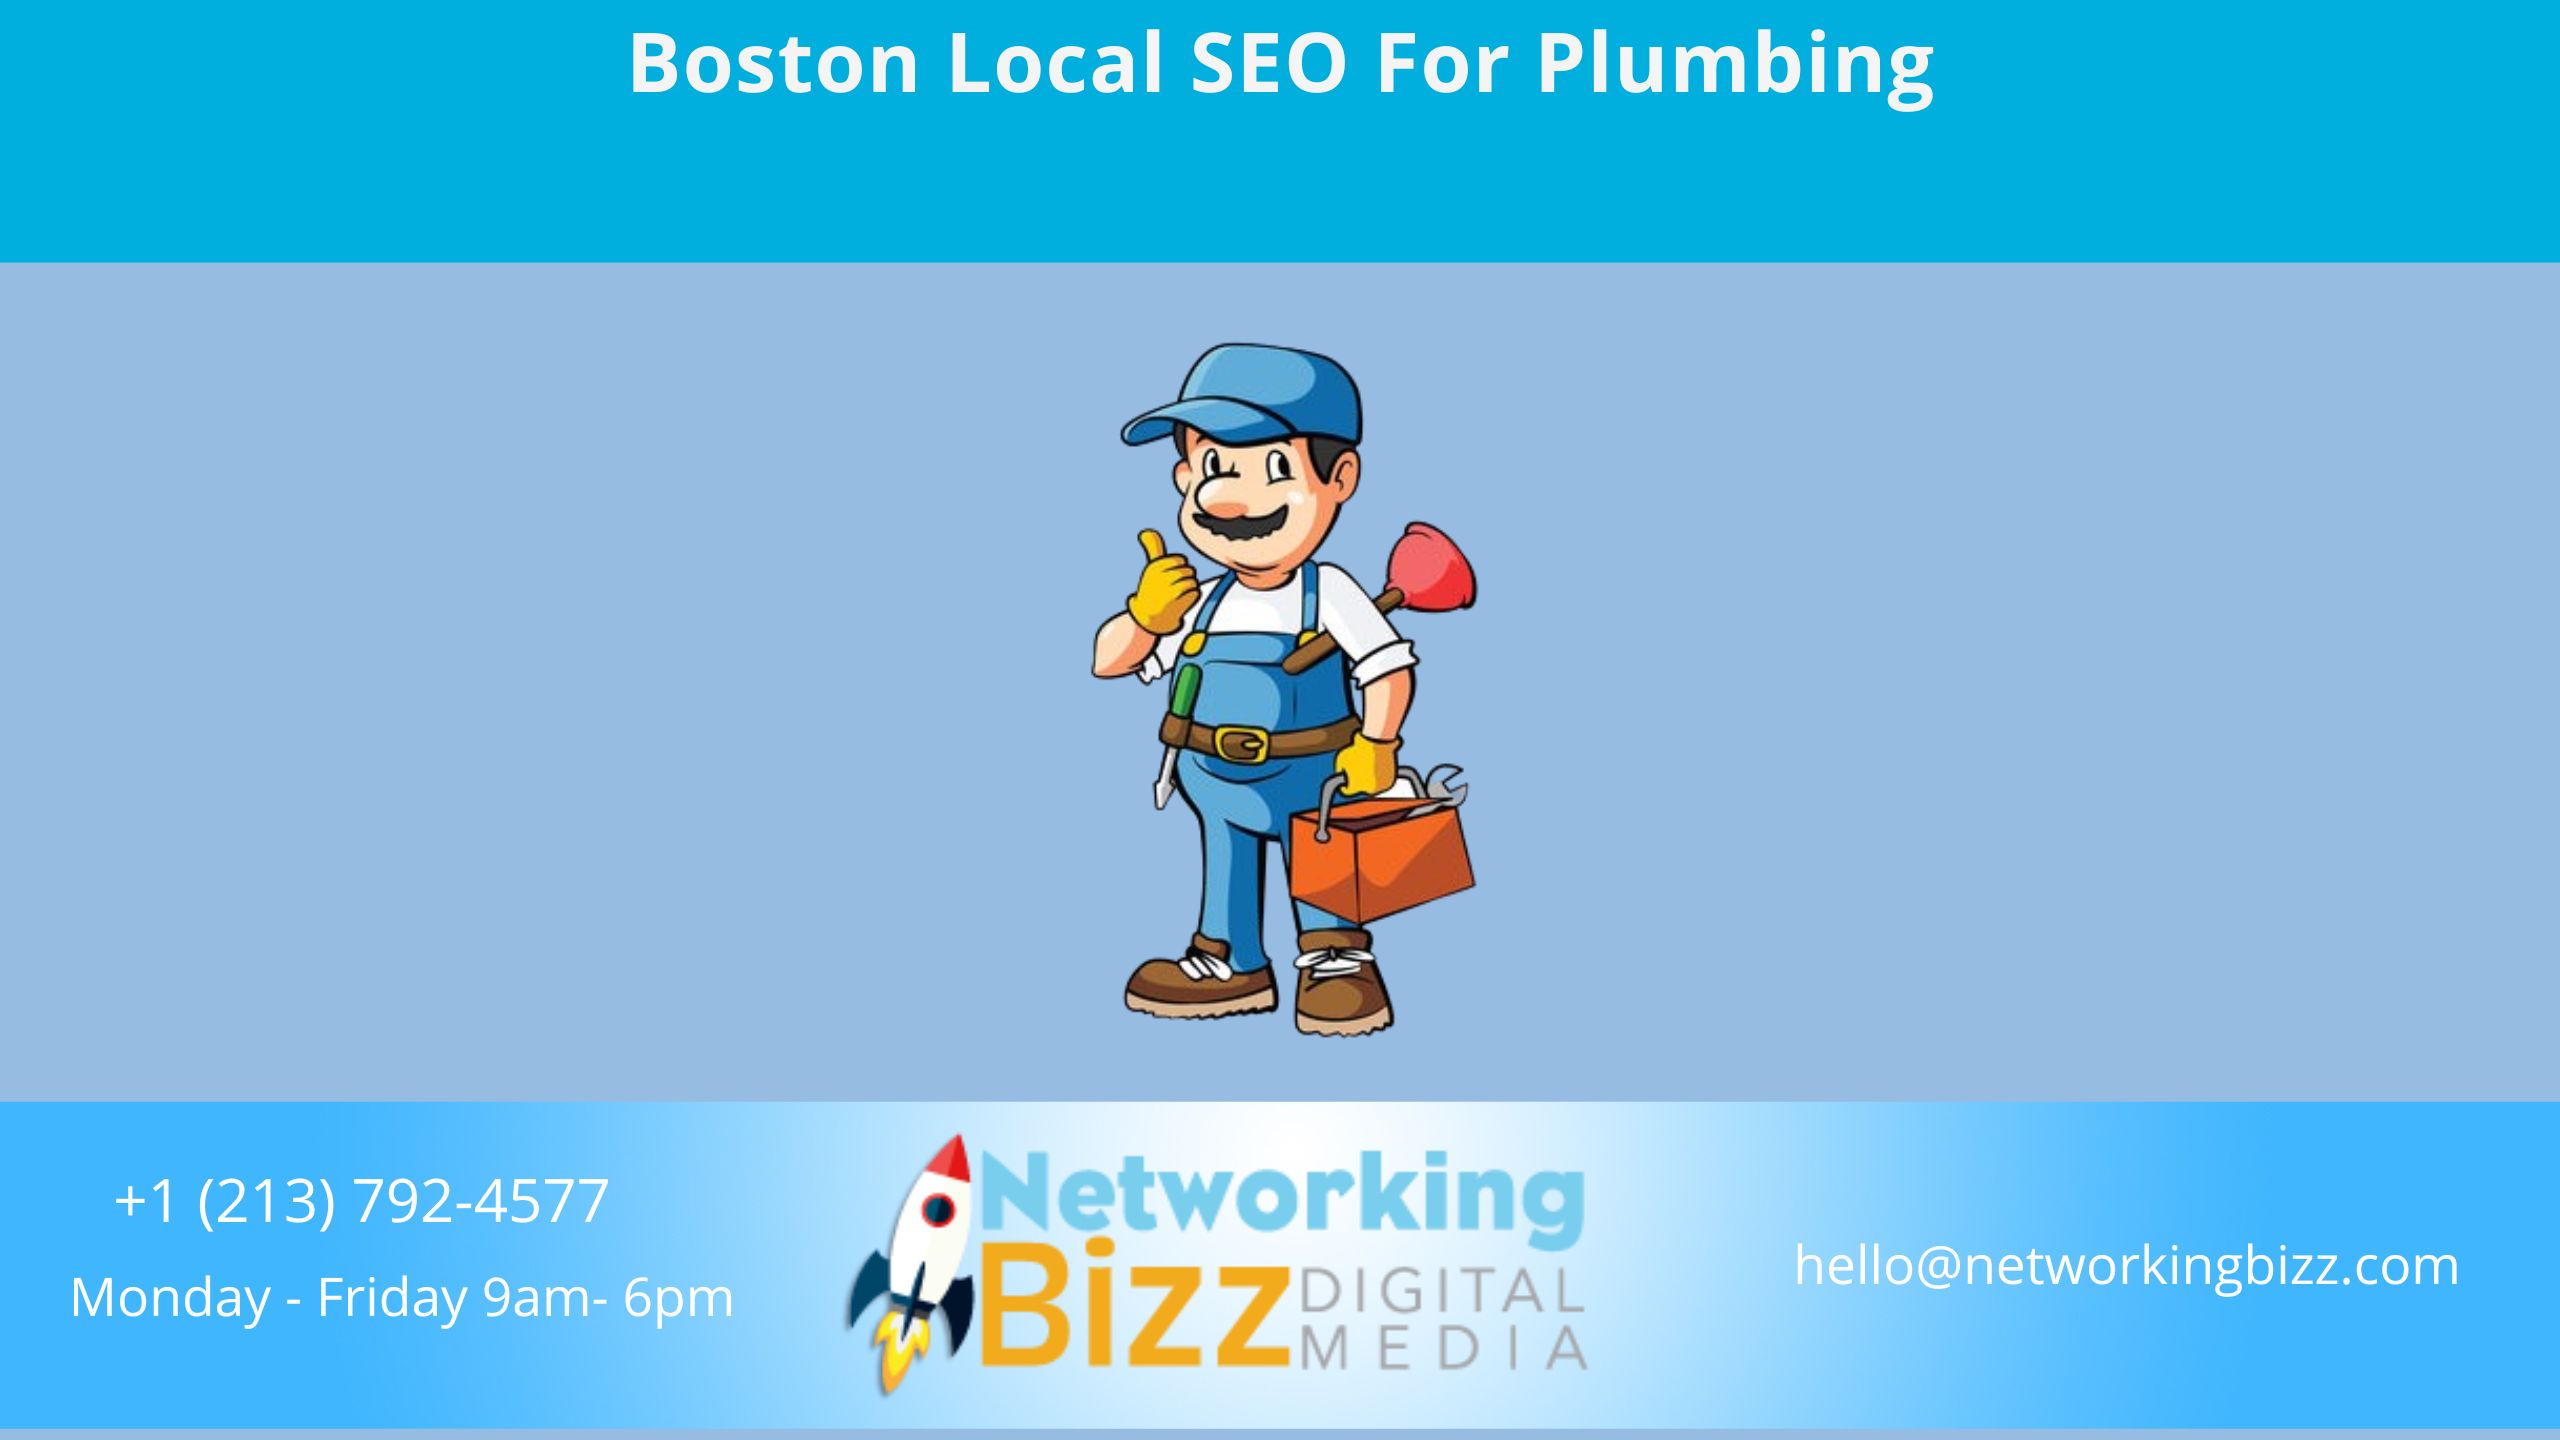 Boston Local SEO For Plumbing